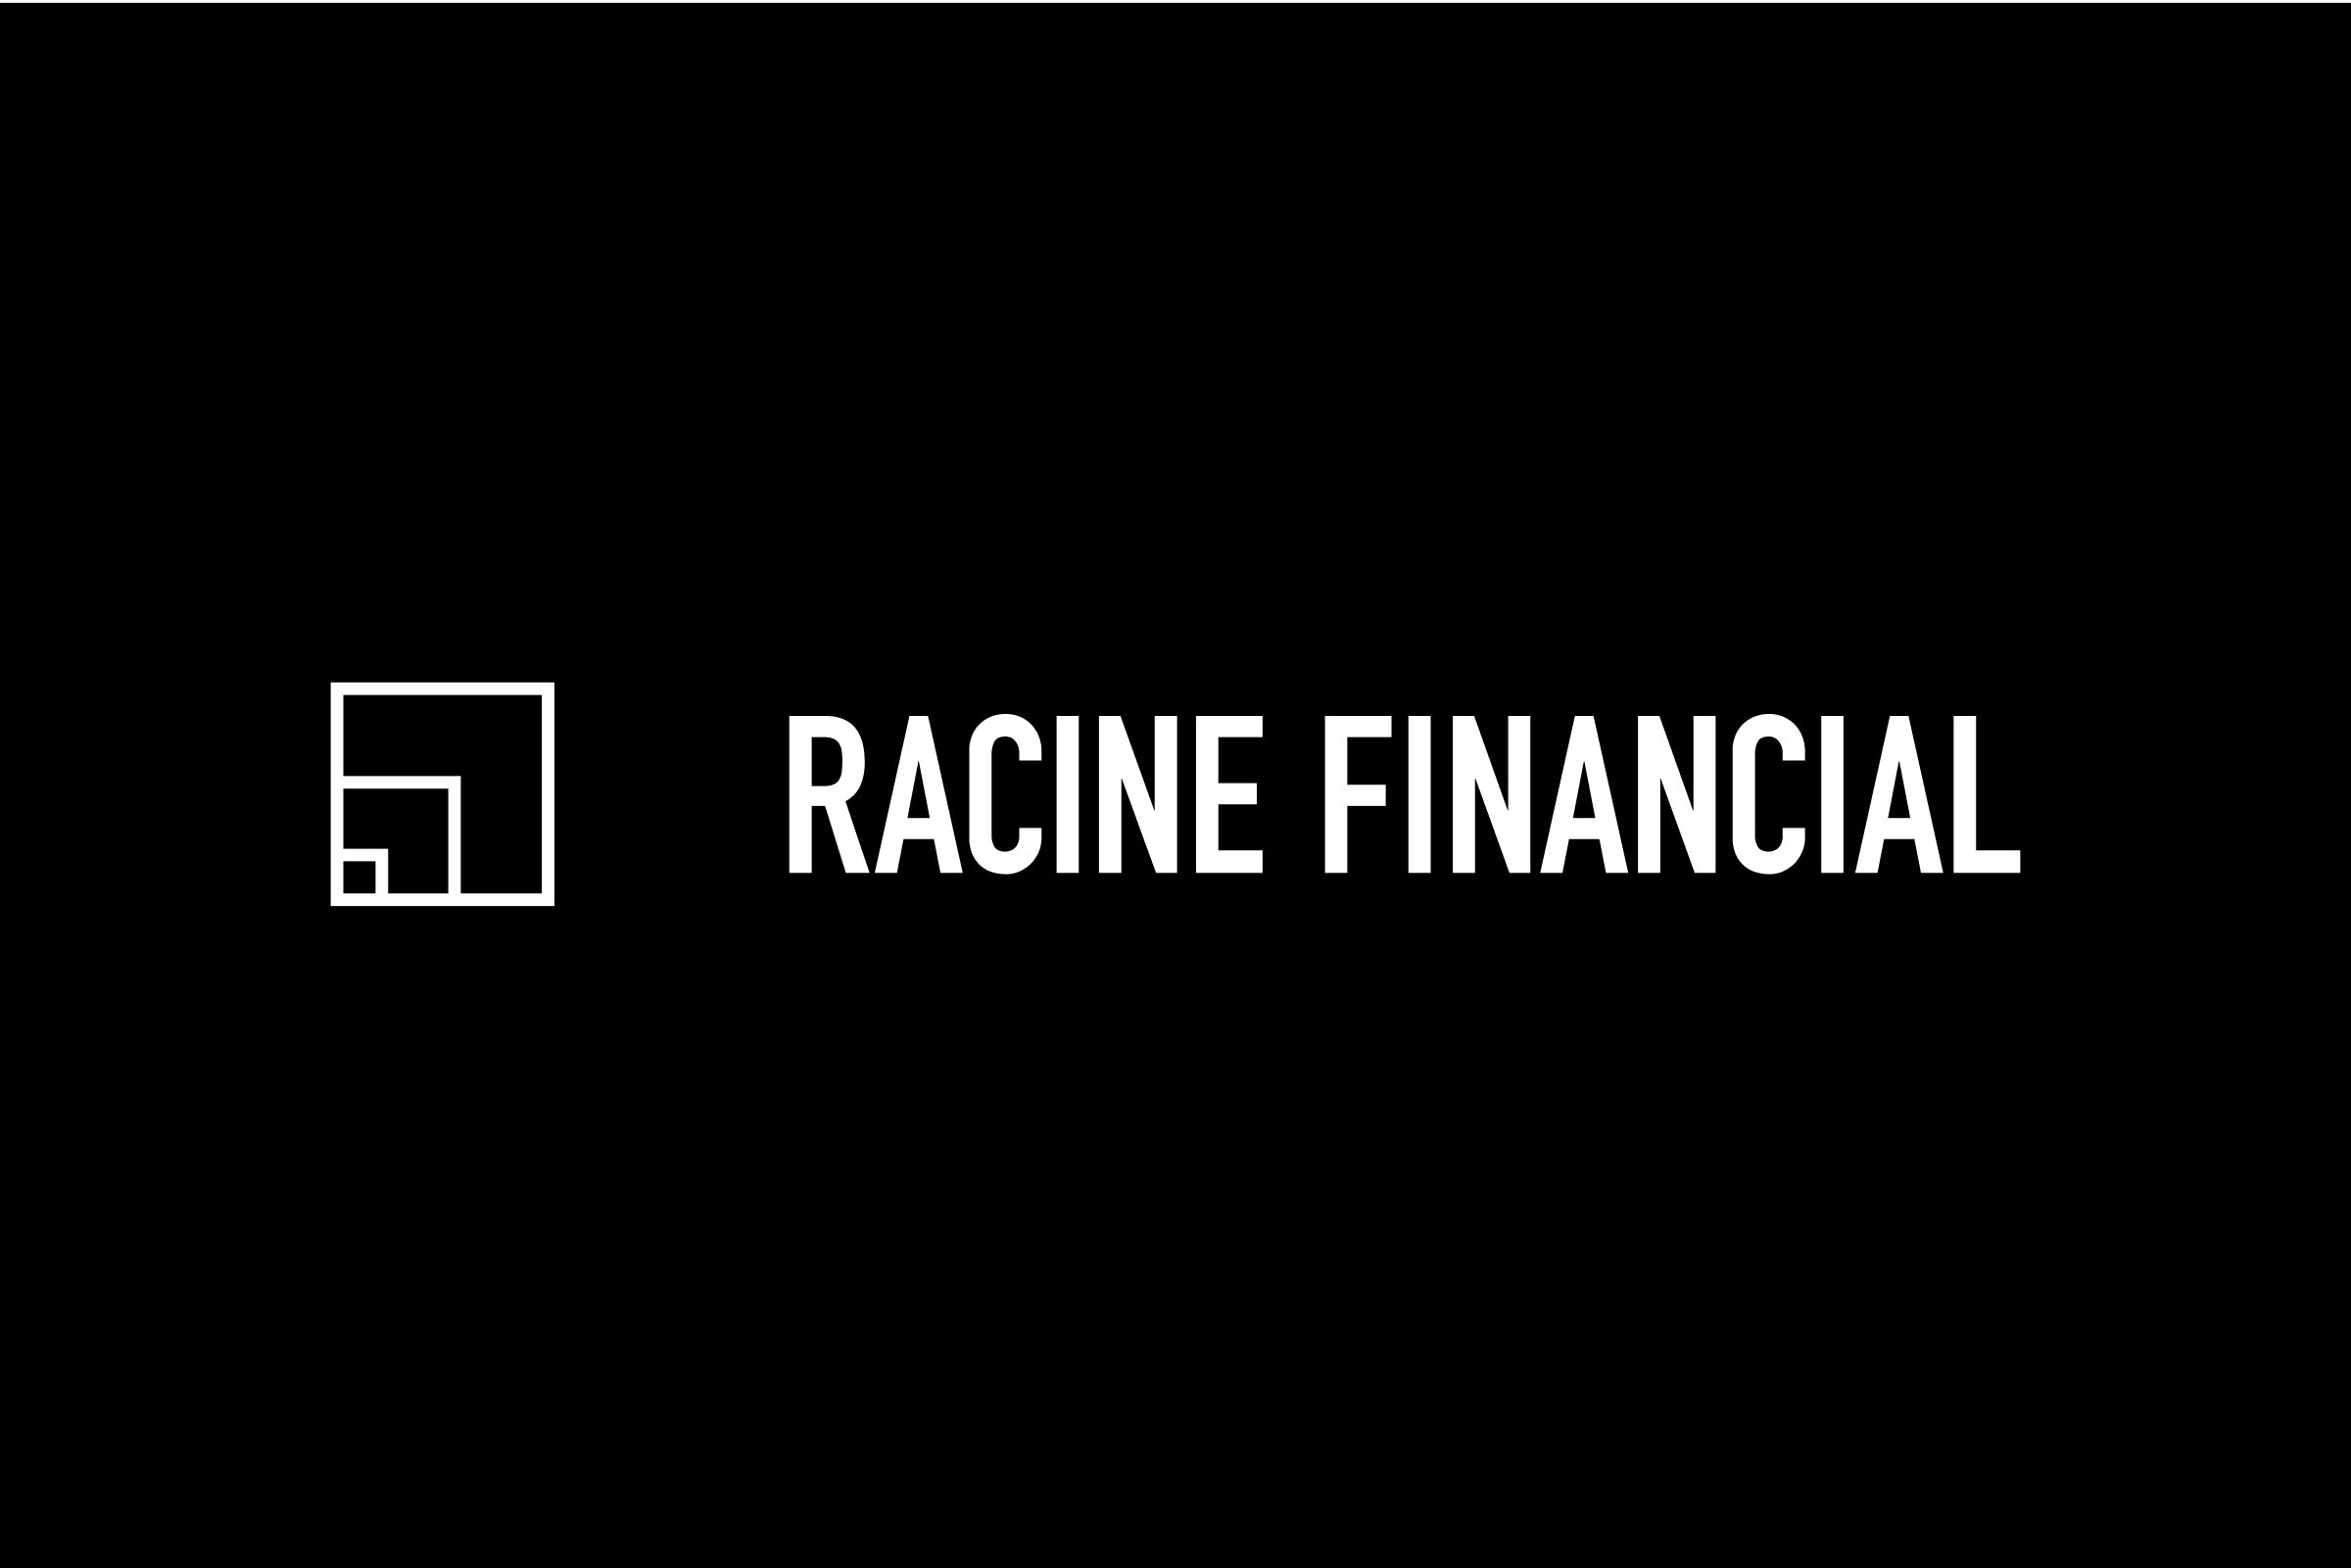 simon-p-coyle-branding-logo-design-2015-racine-financial